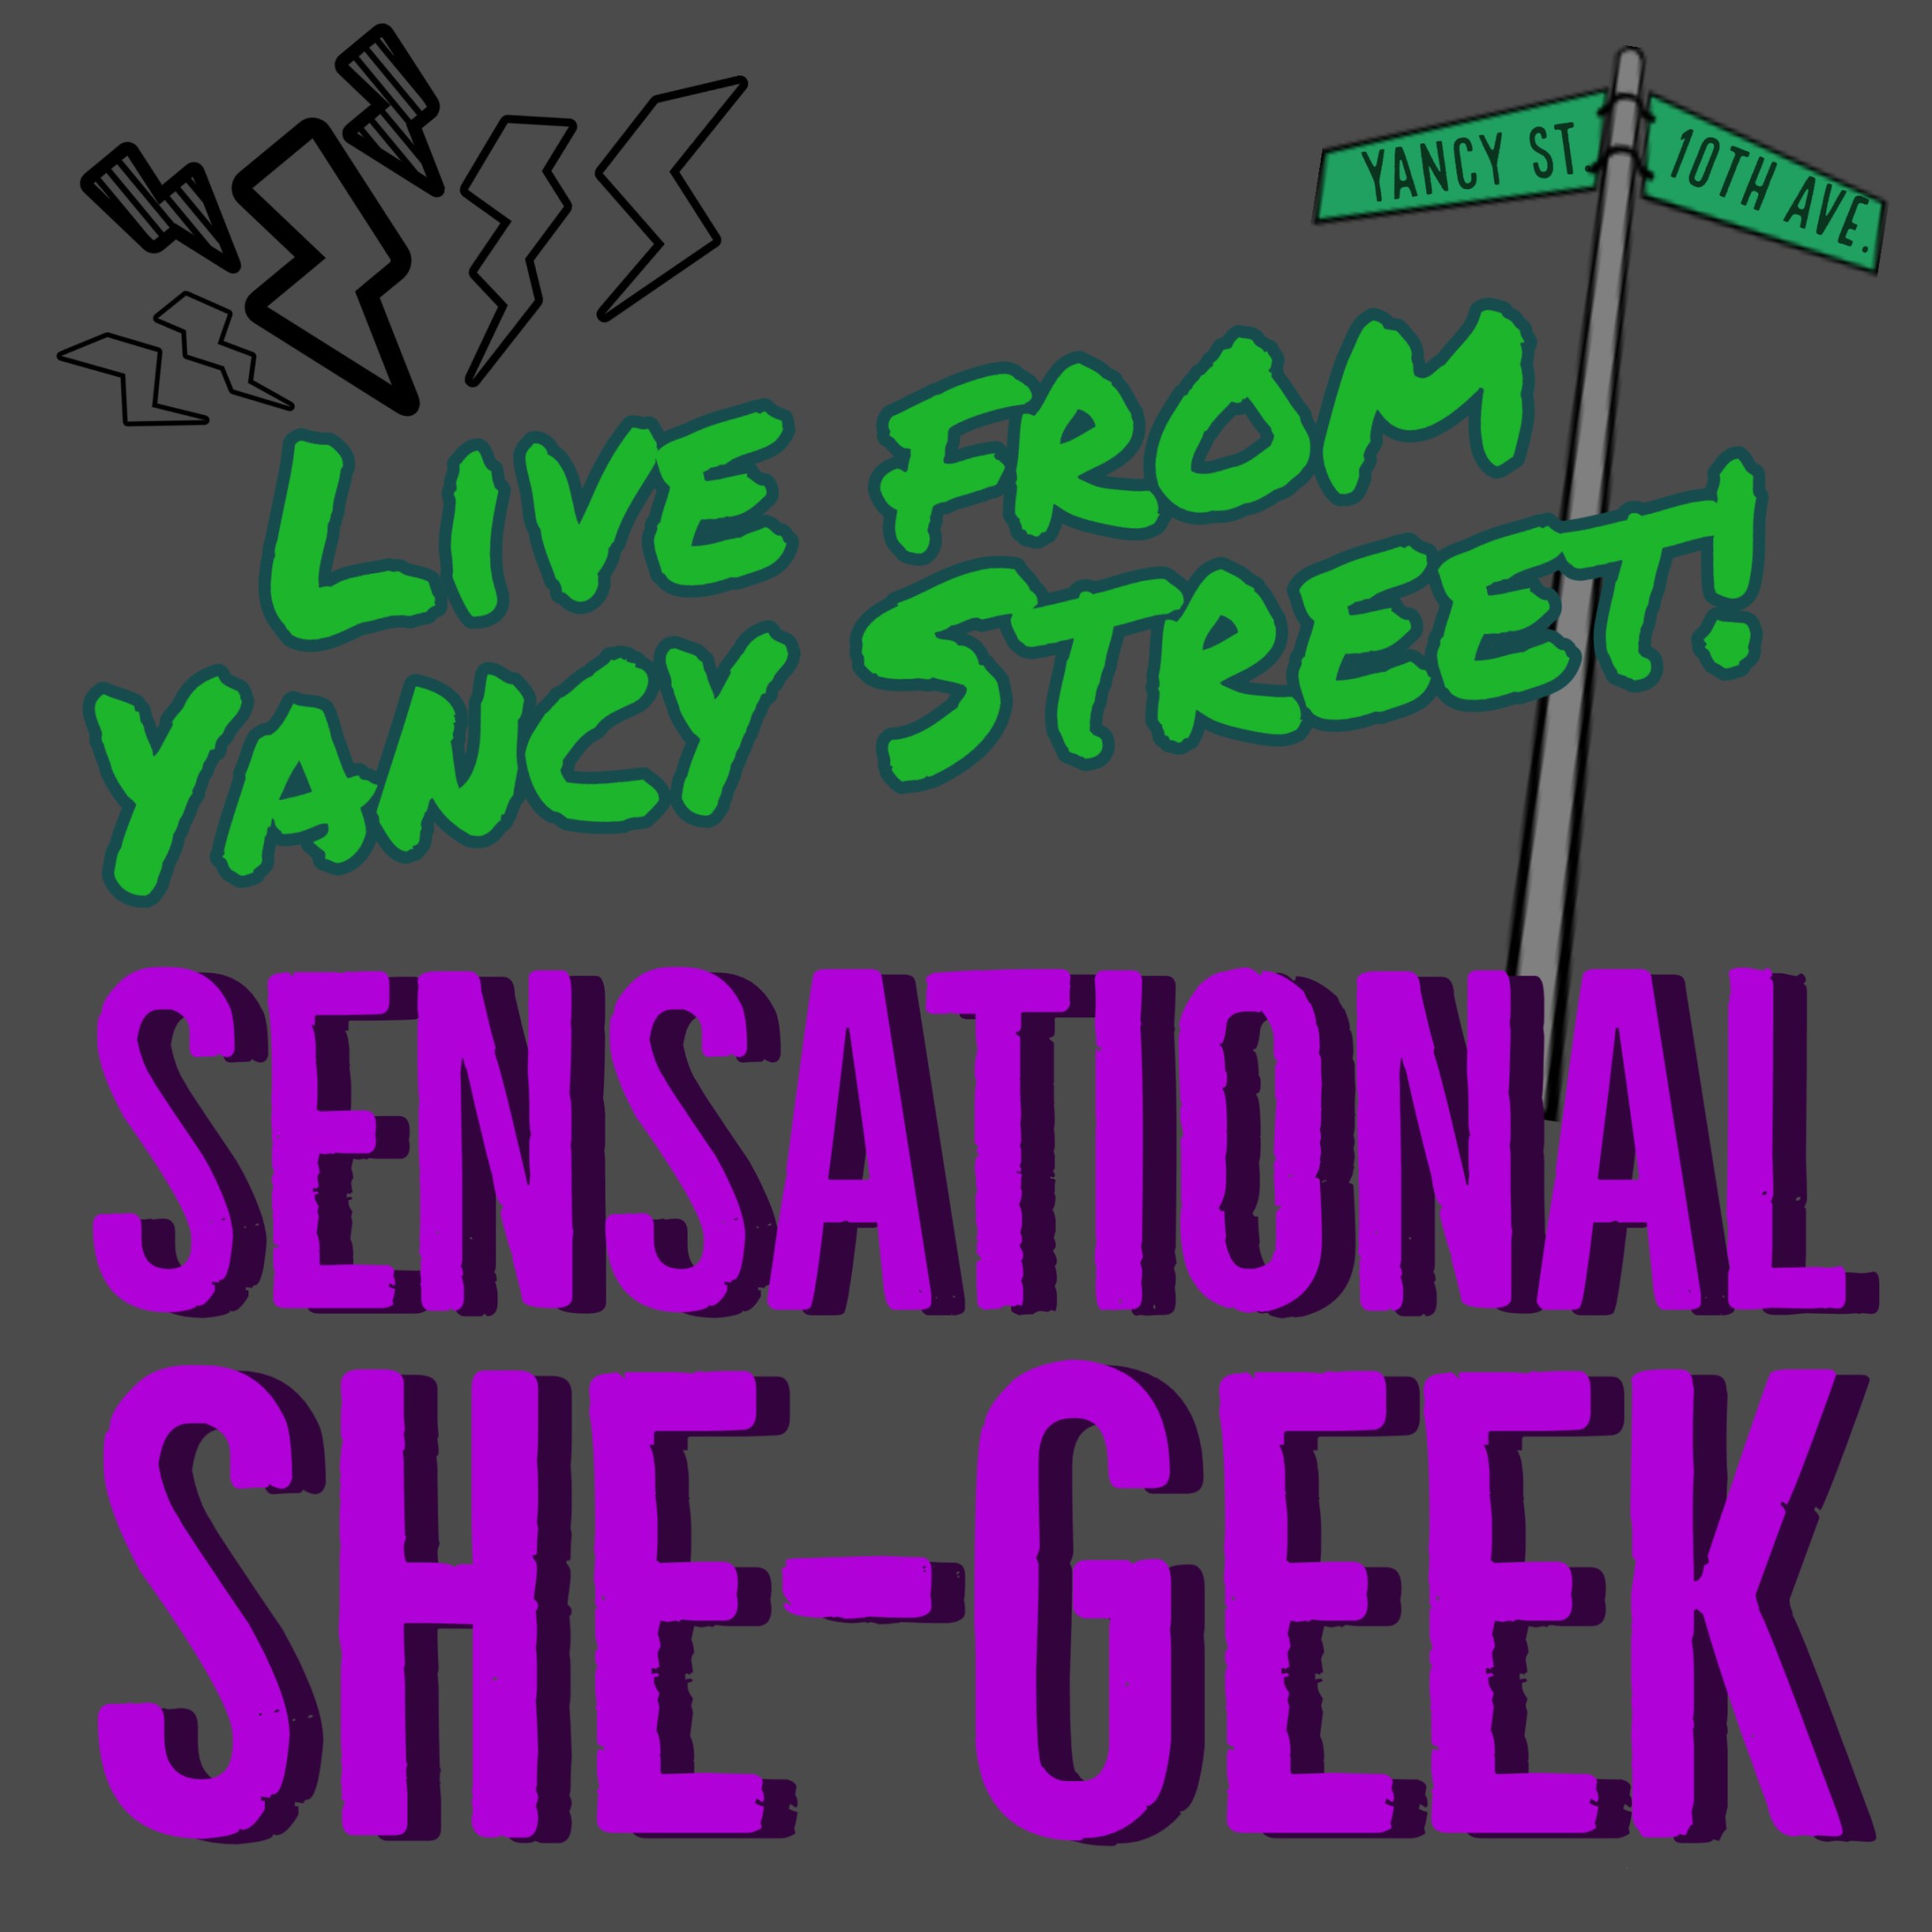 Sensational She-Geek, Live from Yancy Street!